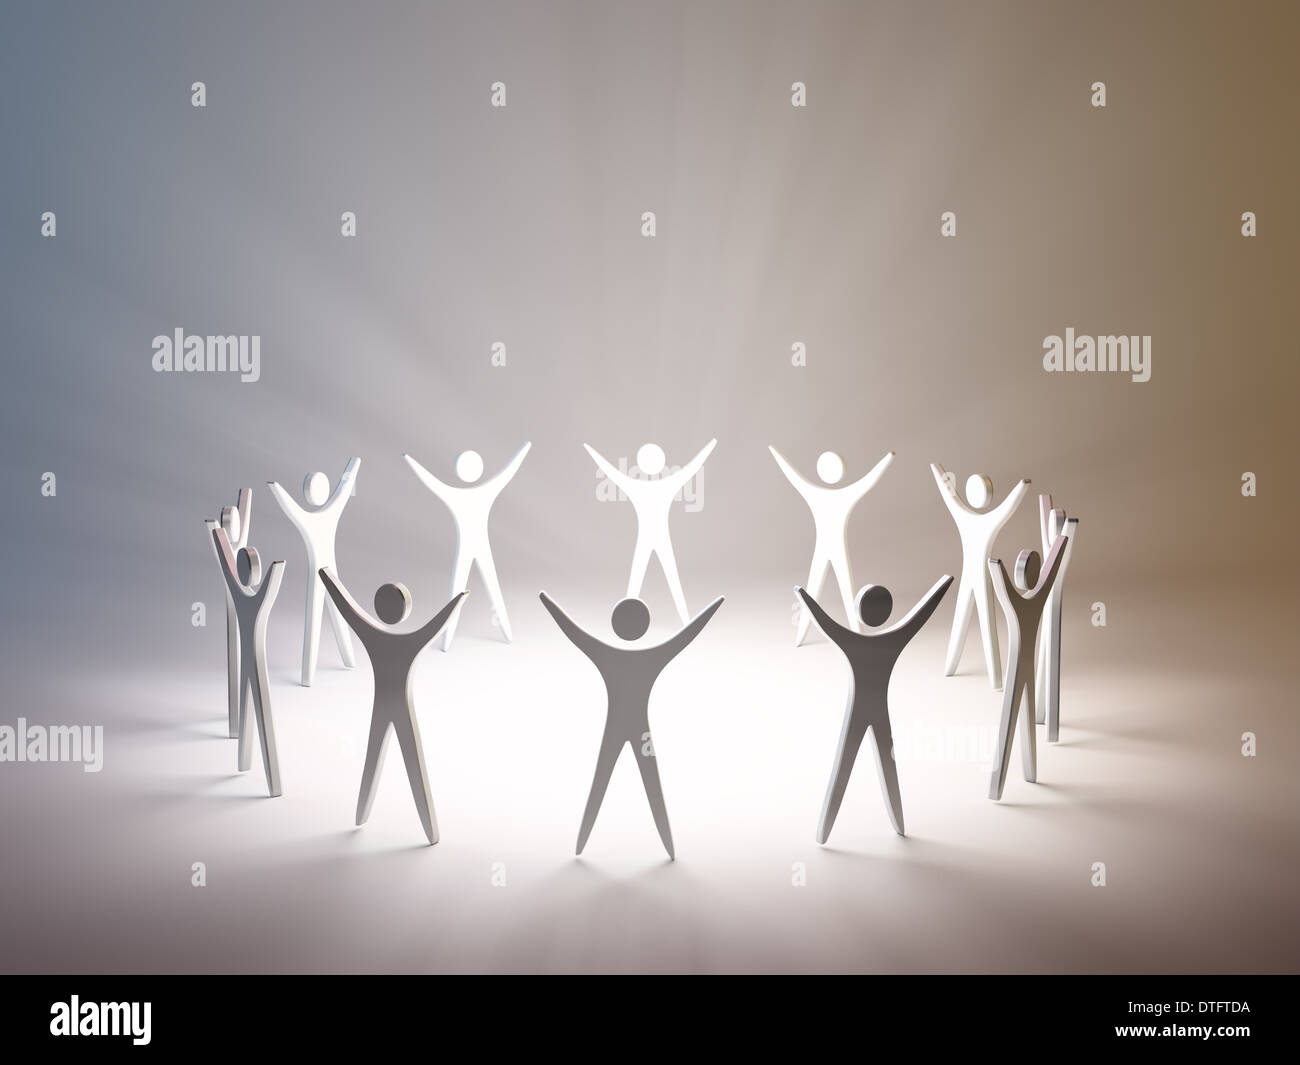 Groupe de personnes stylisées silhouettes debout dans un cercle Banque D'Images